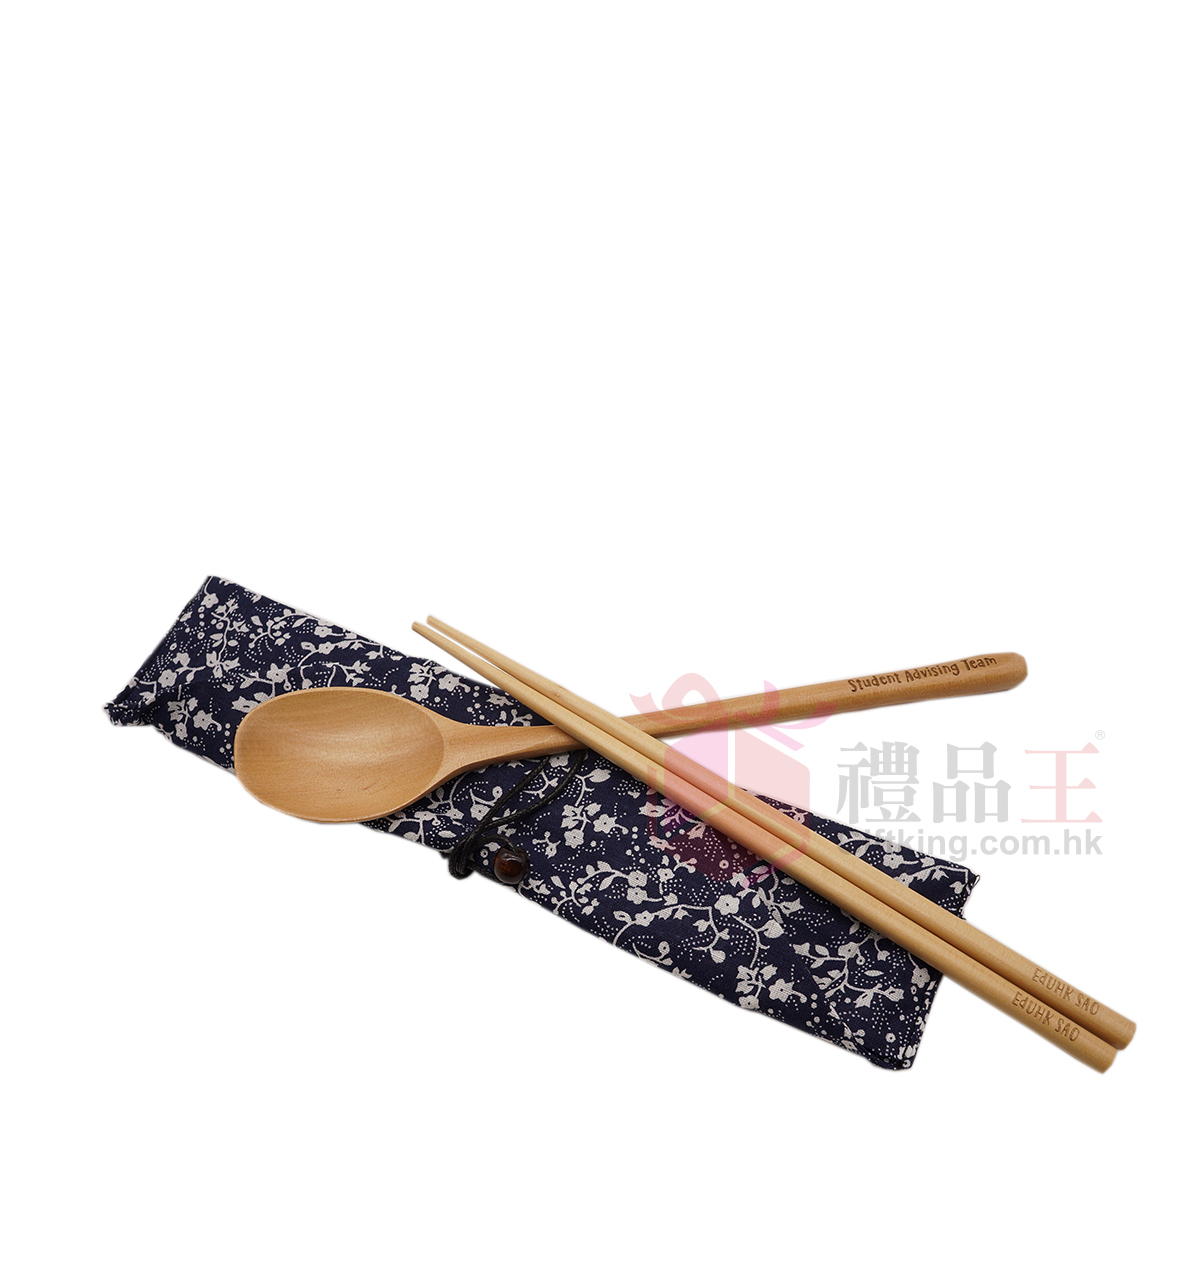 EdUHK SAO 和式竹木餐具 (環保禮品)